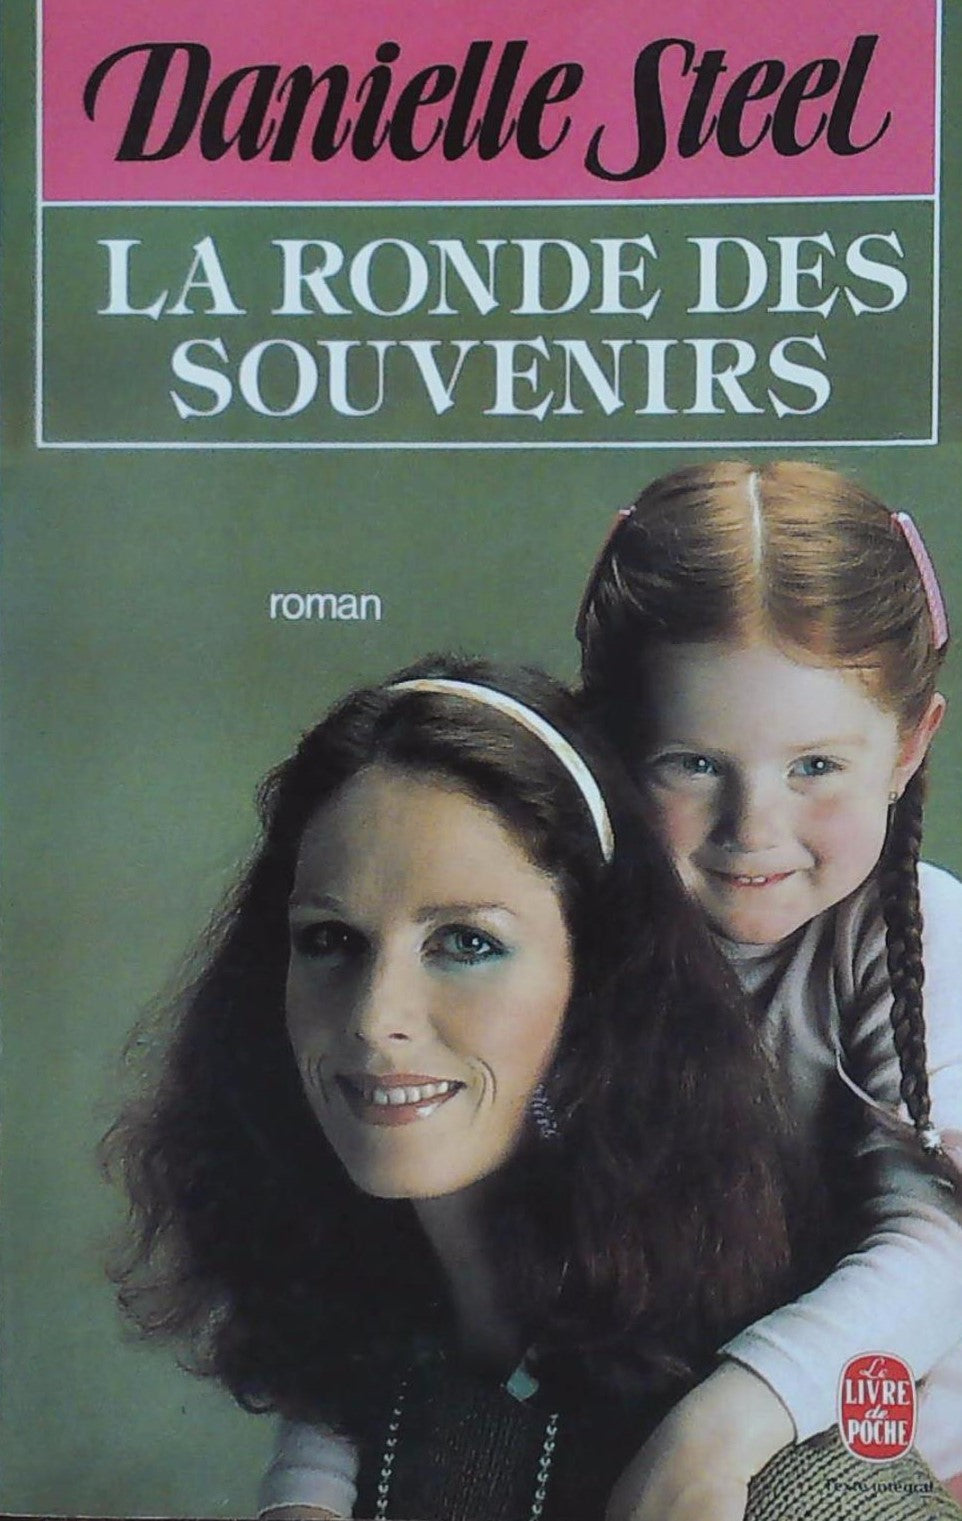 Livre ISBN 2253050024 La ronde des souvenirs (Danielle Steel)